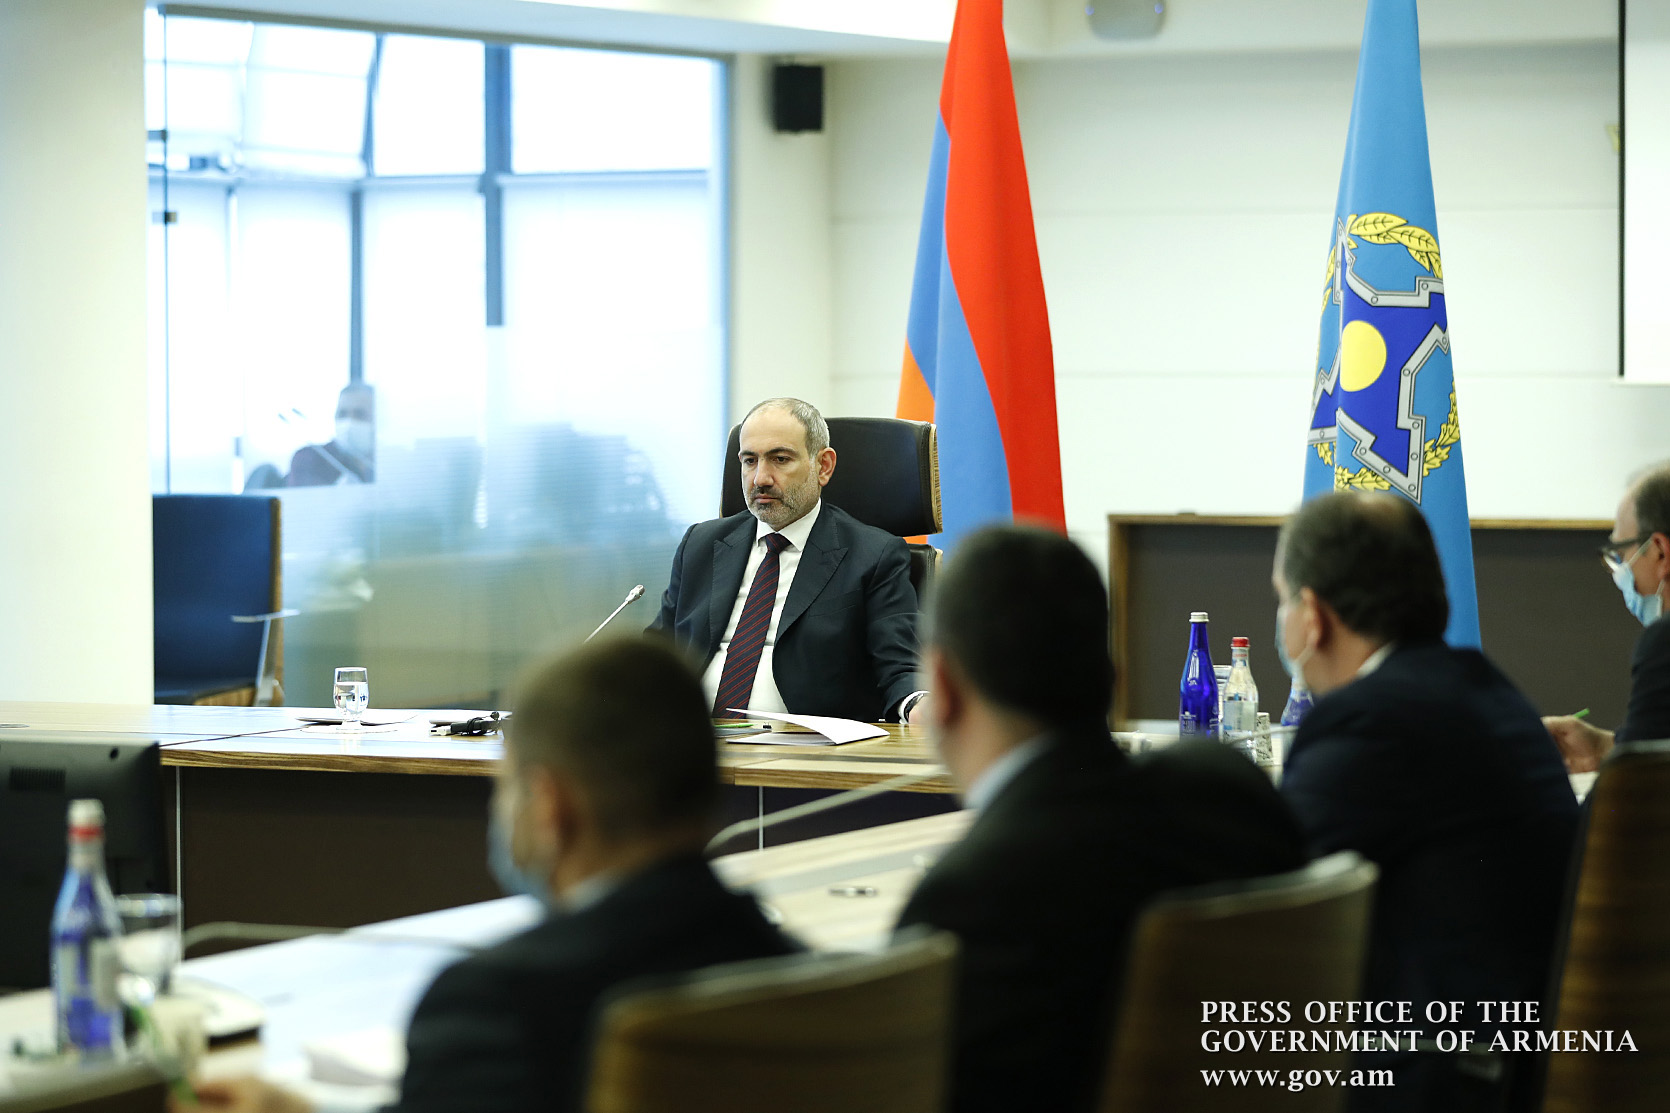 На заседании ОДКБ Пашинян назвал приоритетами обмен военнопленными и телами погибших